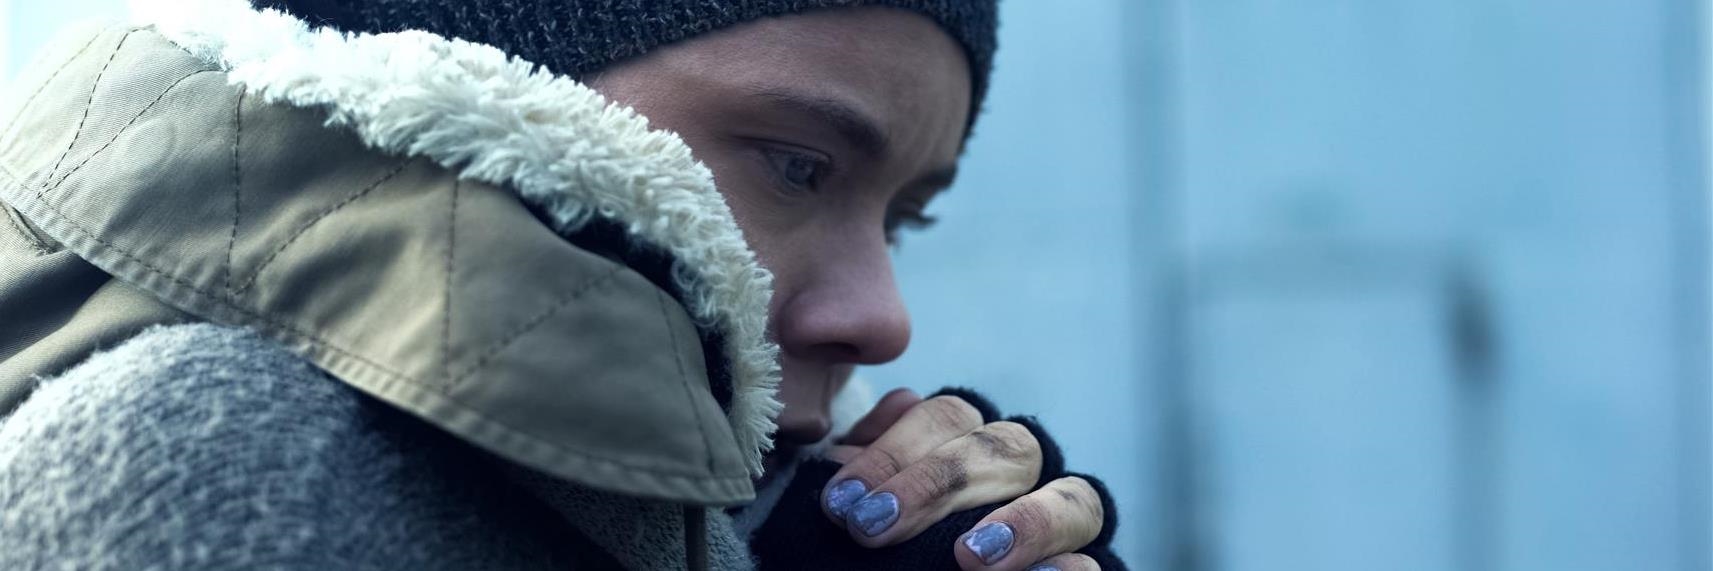 Eine junge Frau in Winterkleidung und mit dreckigen Händen schaut nachdenklich